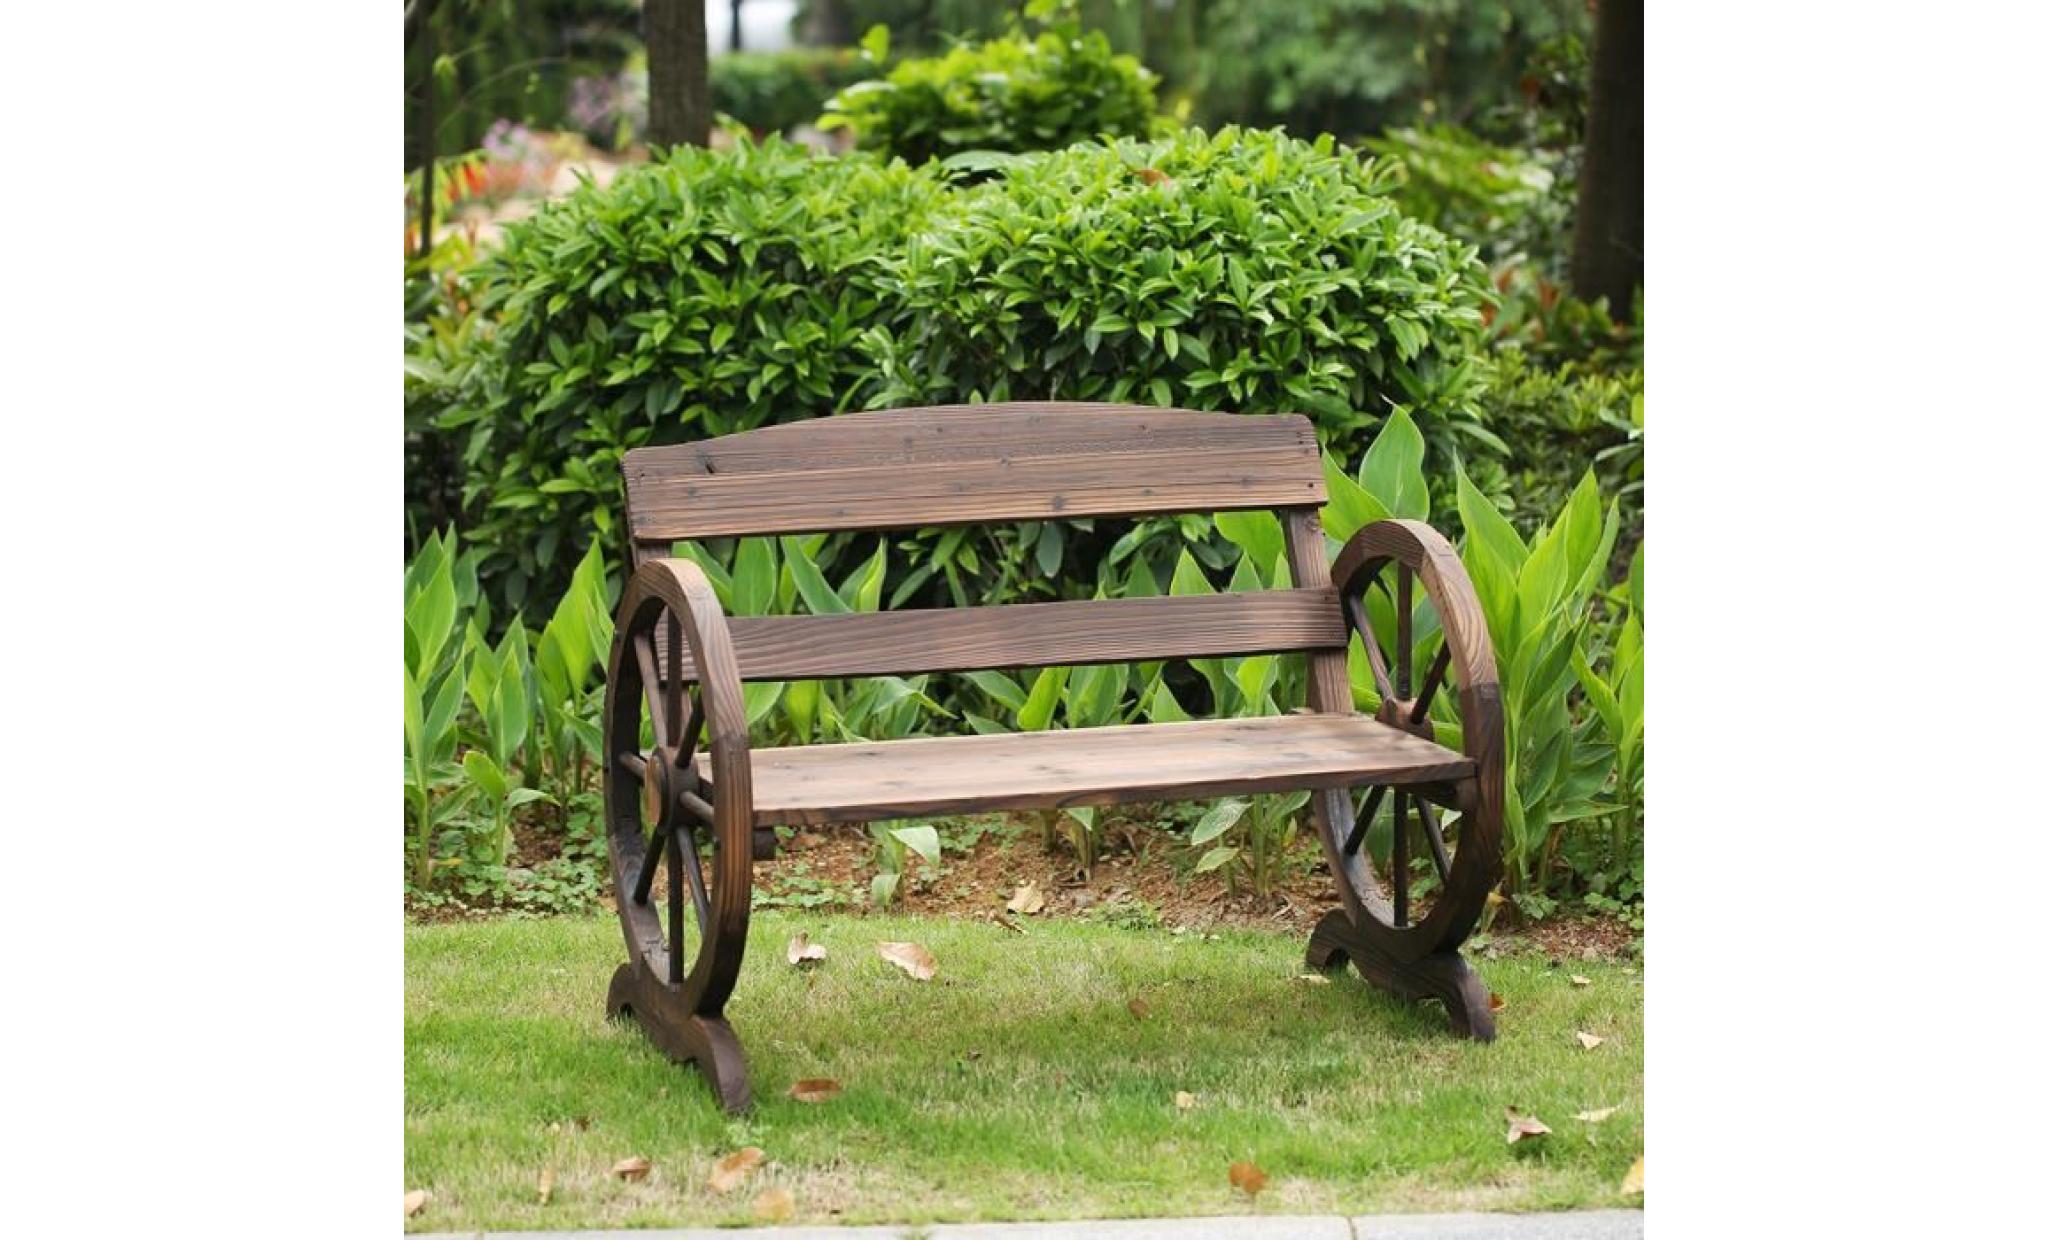 ikayaa banc 2 places en bois extérieur jardin patio style rustique forme de de roue capacité de charge max 250kg